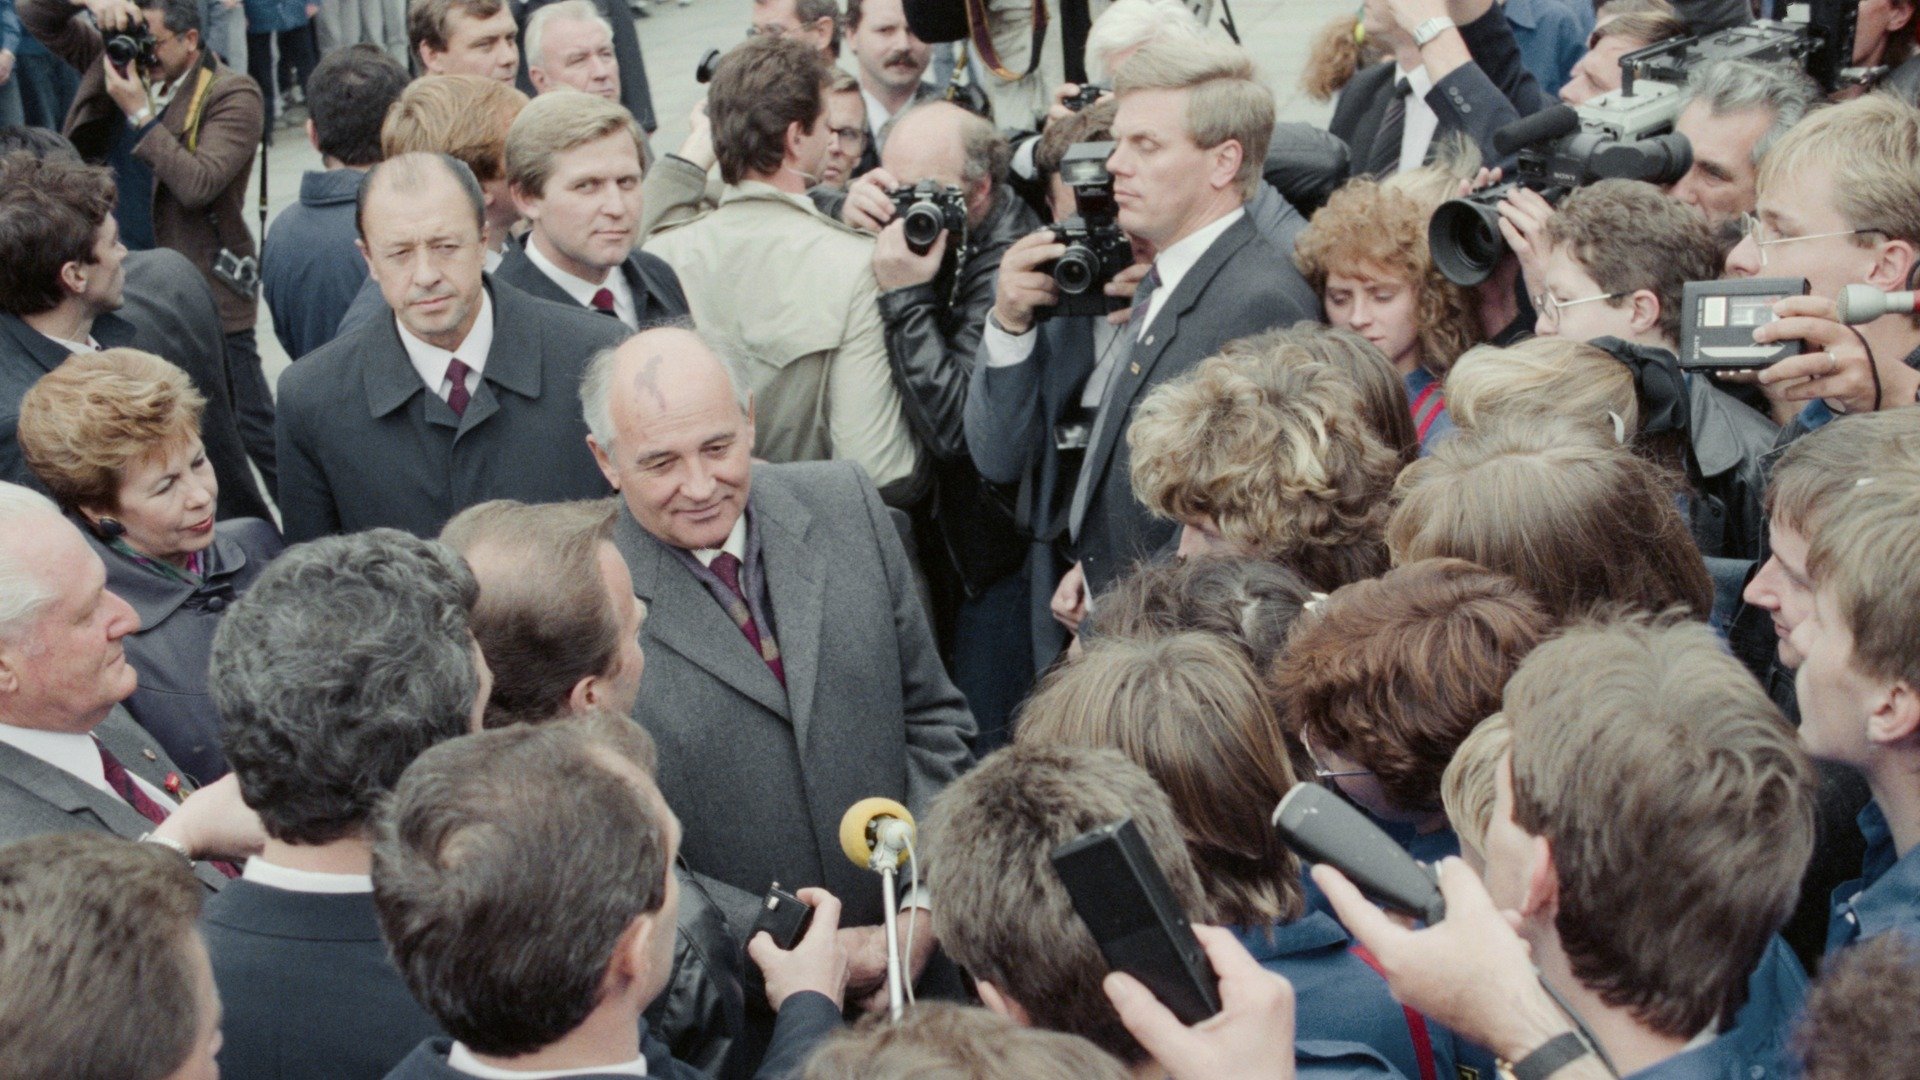 6 октября 1989 г. Михаил Горбачев во время встречи с жителями Берлина. Фото: Юрий Лизунов, Александр Чумичев / Фотохроника ТАСС